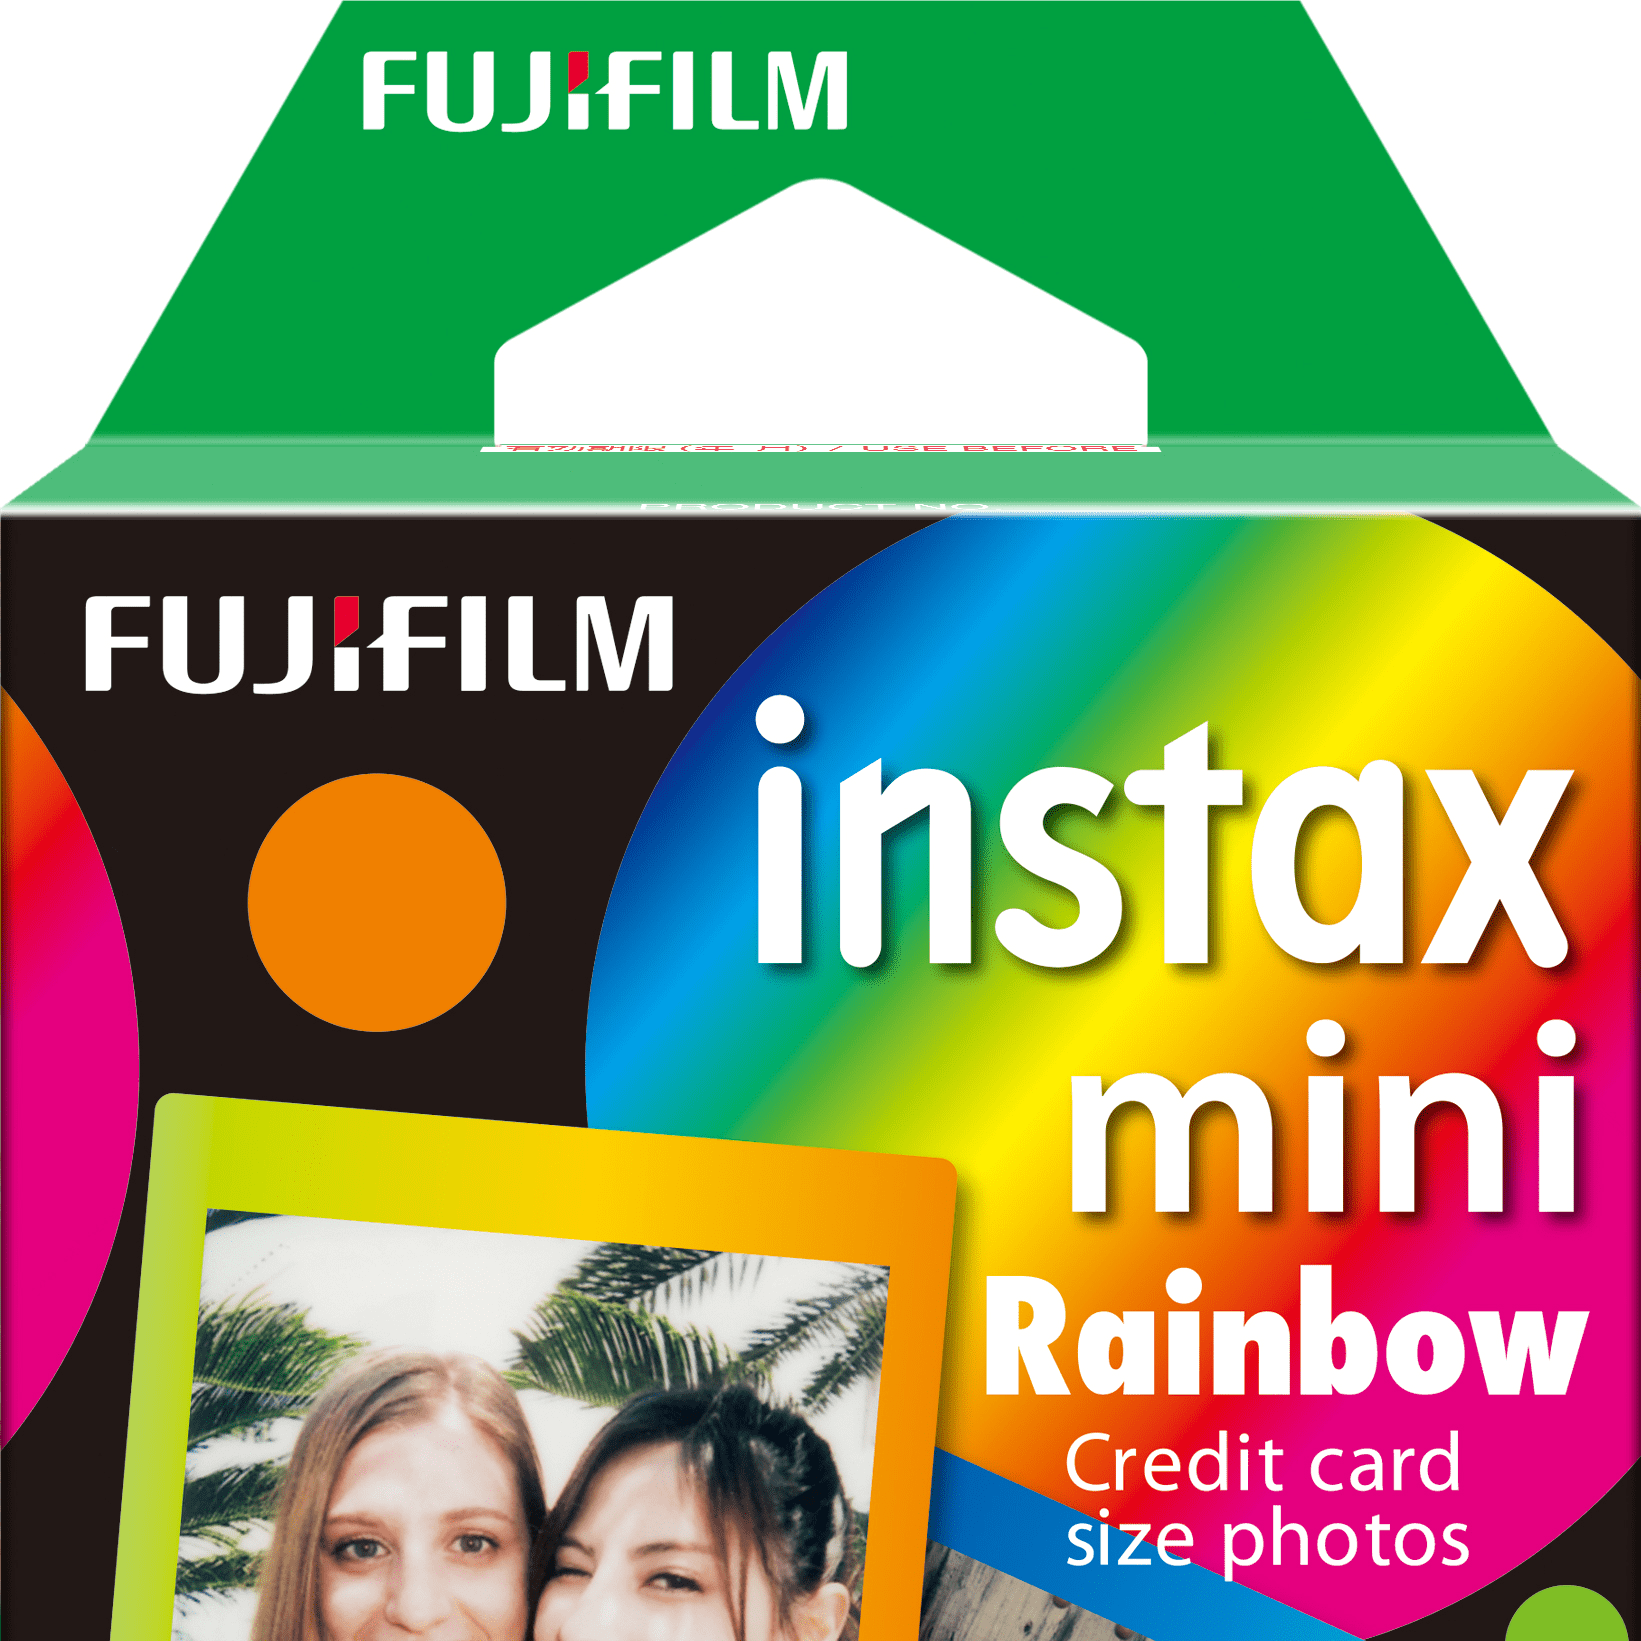 Film Instax Mini Black Frame – Bla Store CR